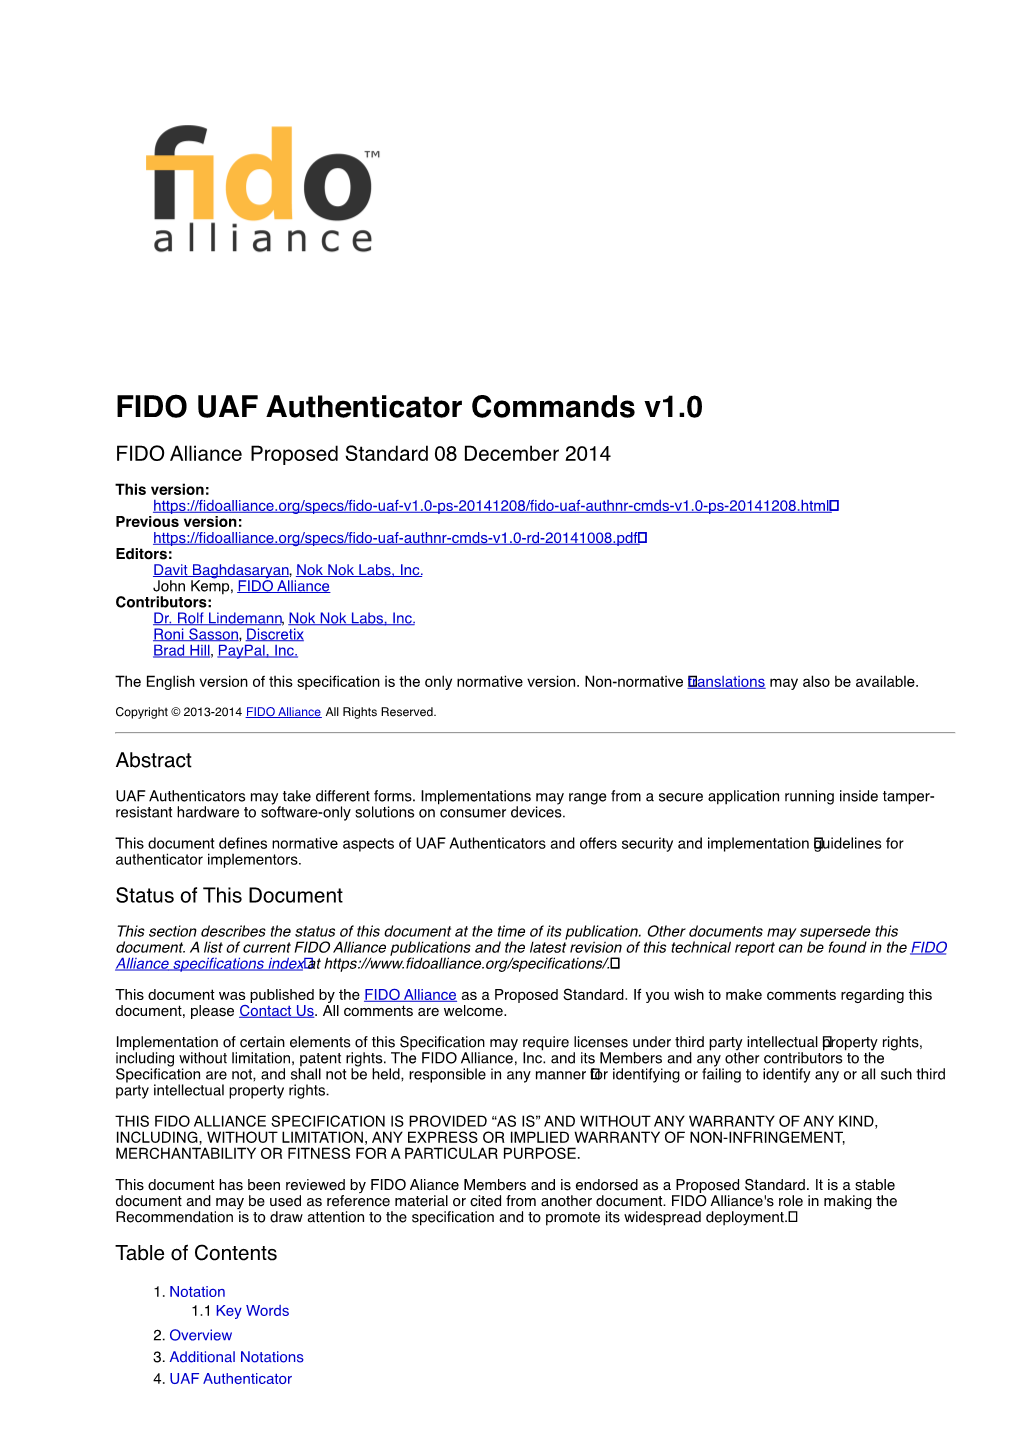 FIDO UAF Authenticator Commands V1.0 FIDO Alliance Proposed Standard 08 December 2014